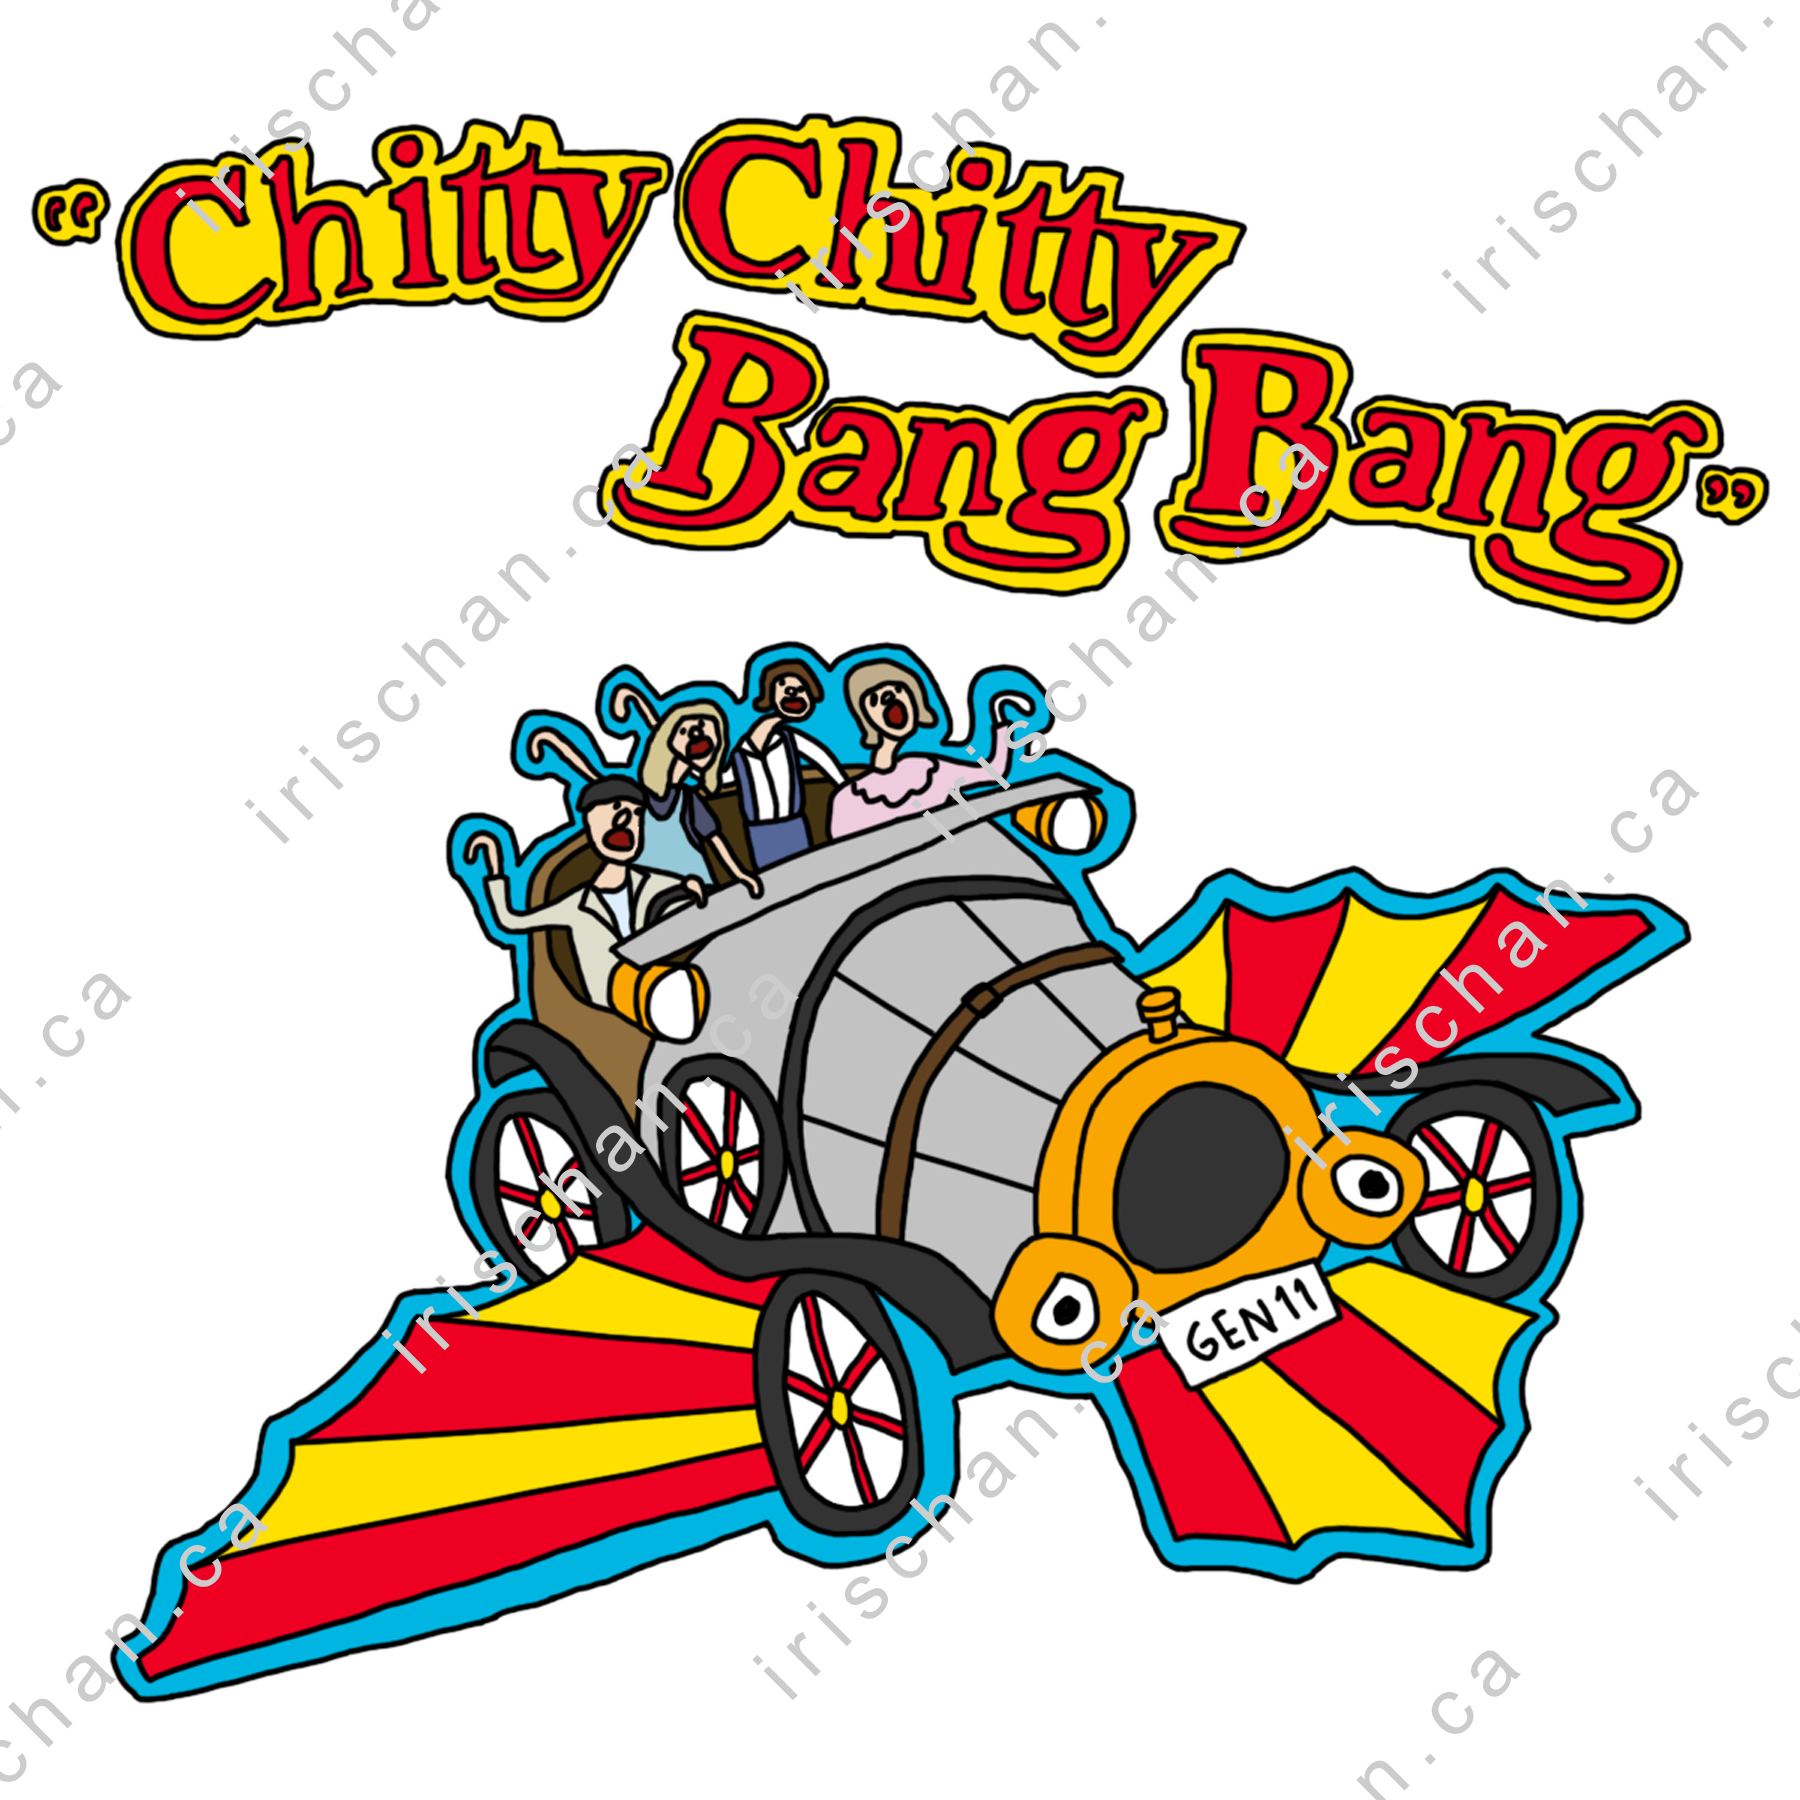 Drawing of Chitty Chitty Bang Bang film poster